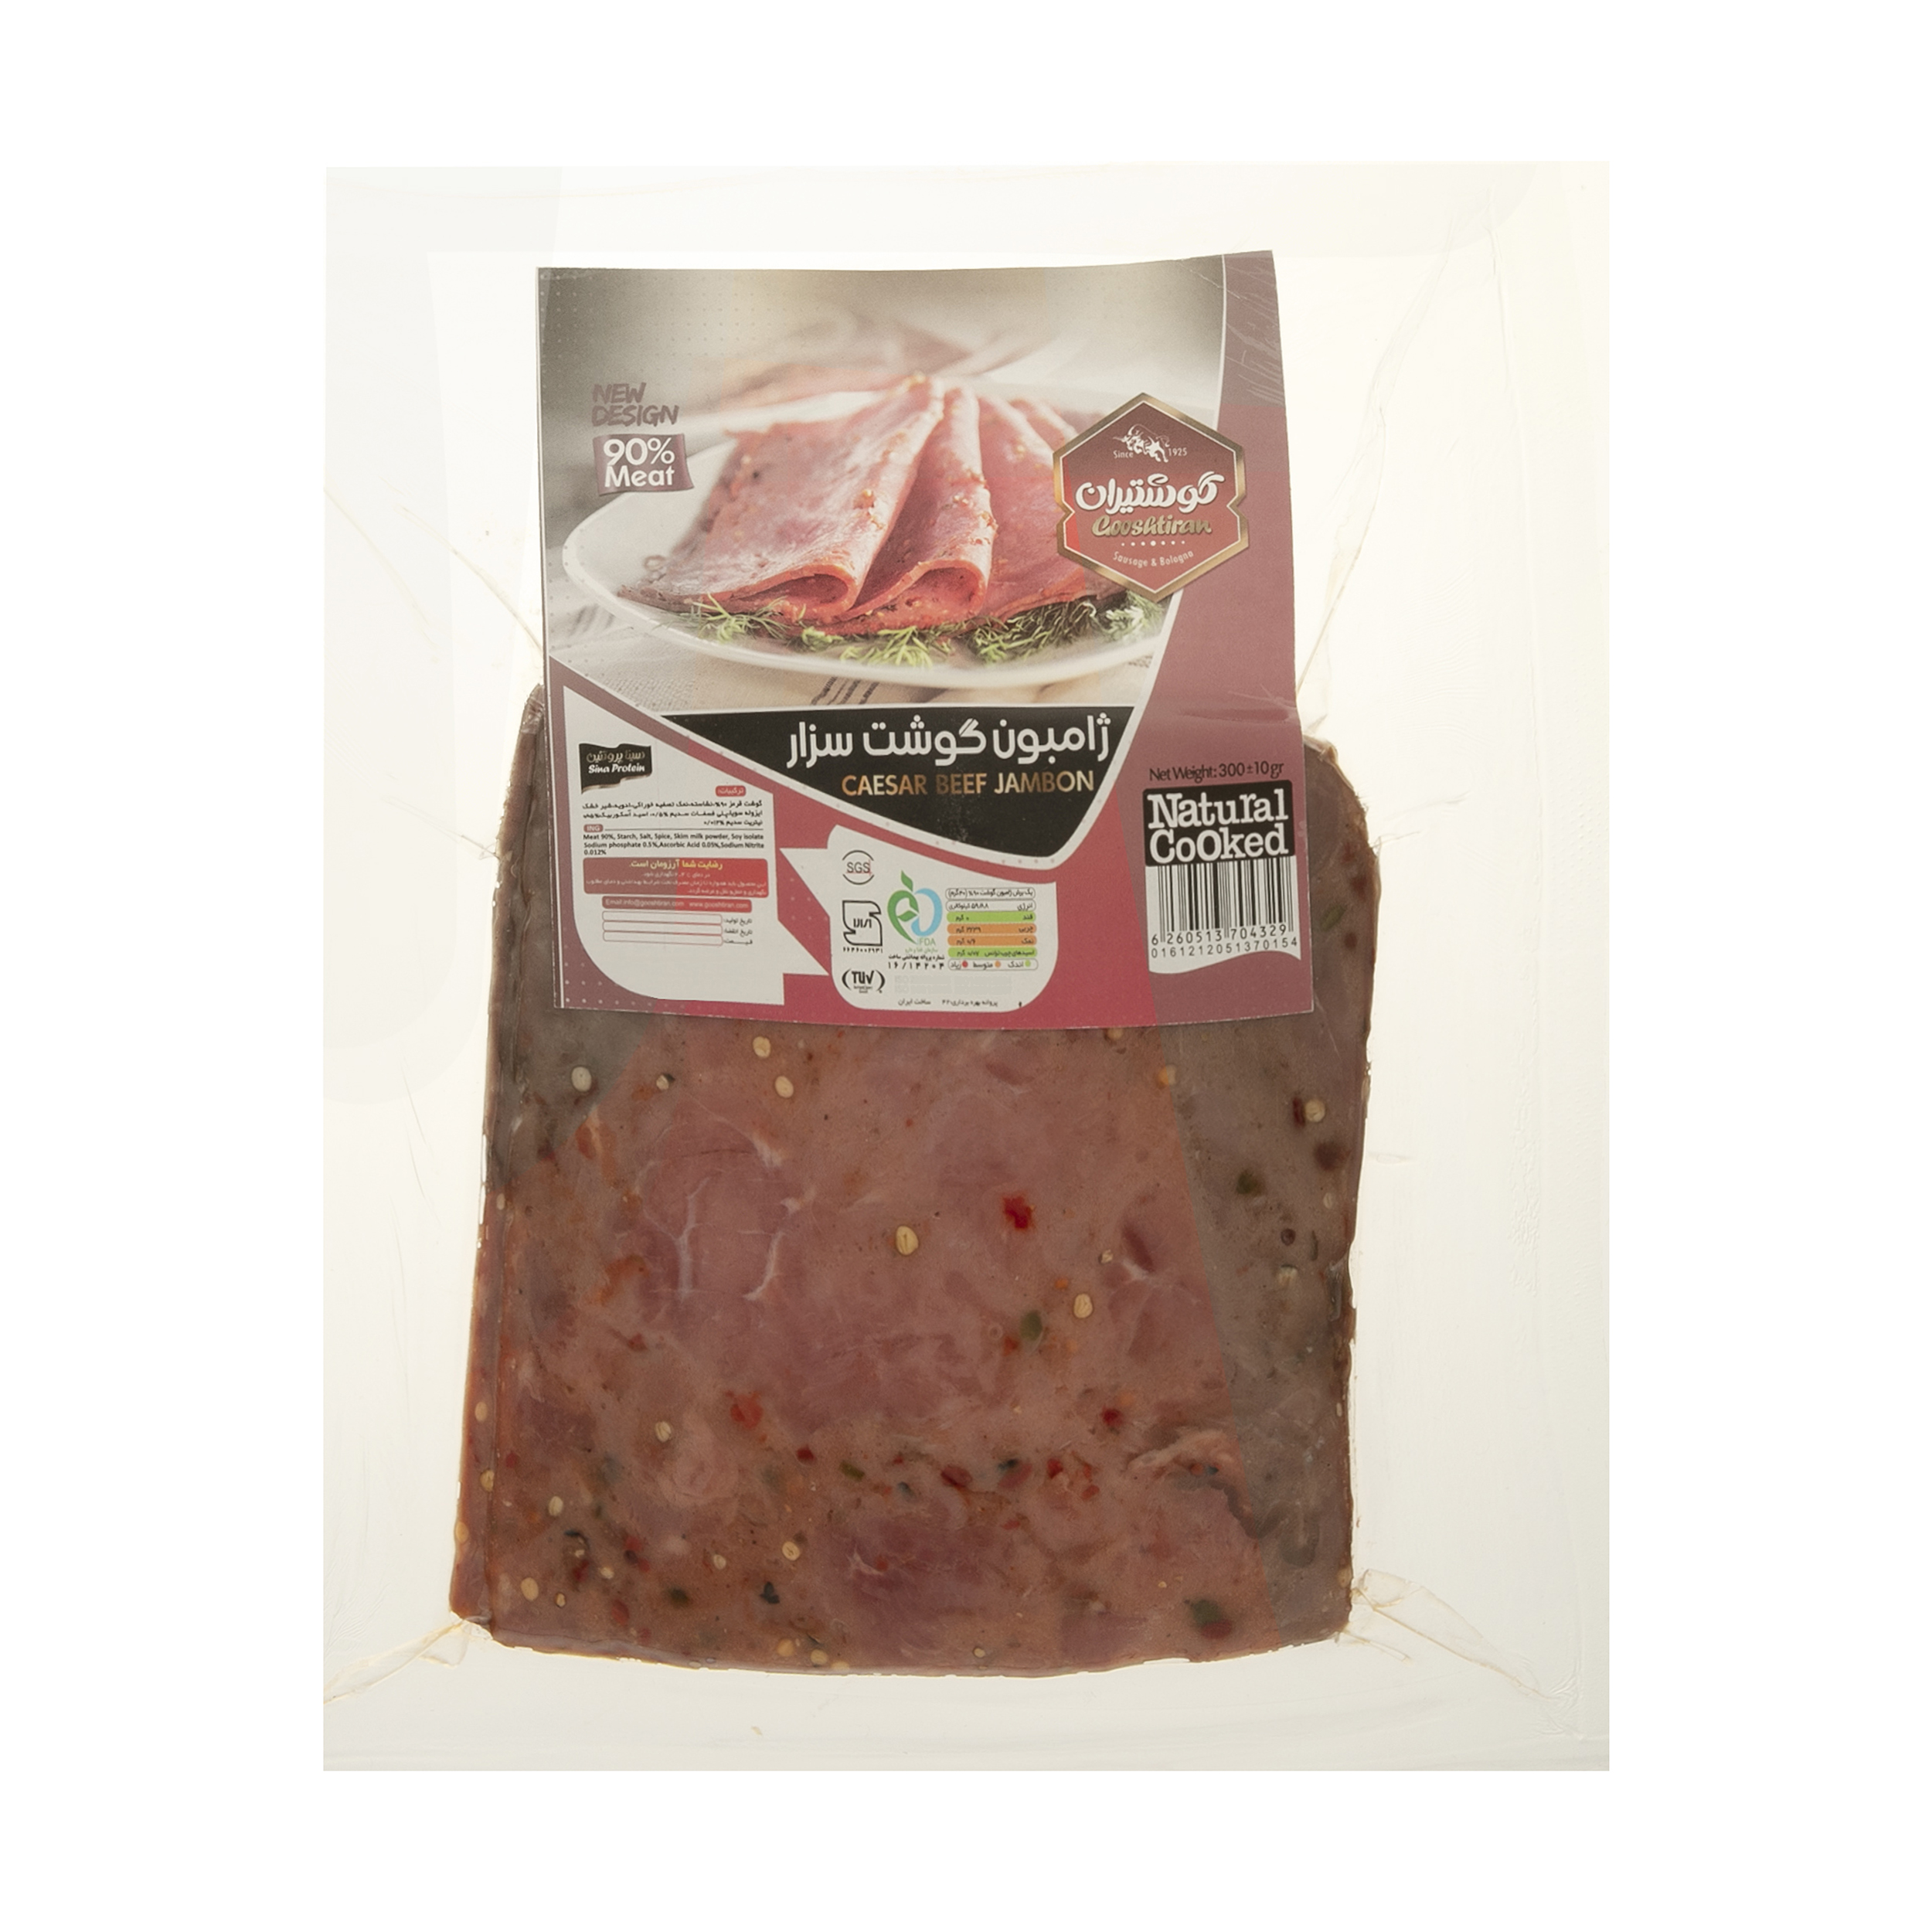  ژامبون سزار گوشت 90 درصد گوشتیران - 300 گرم 